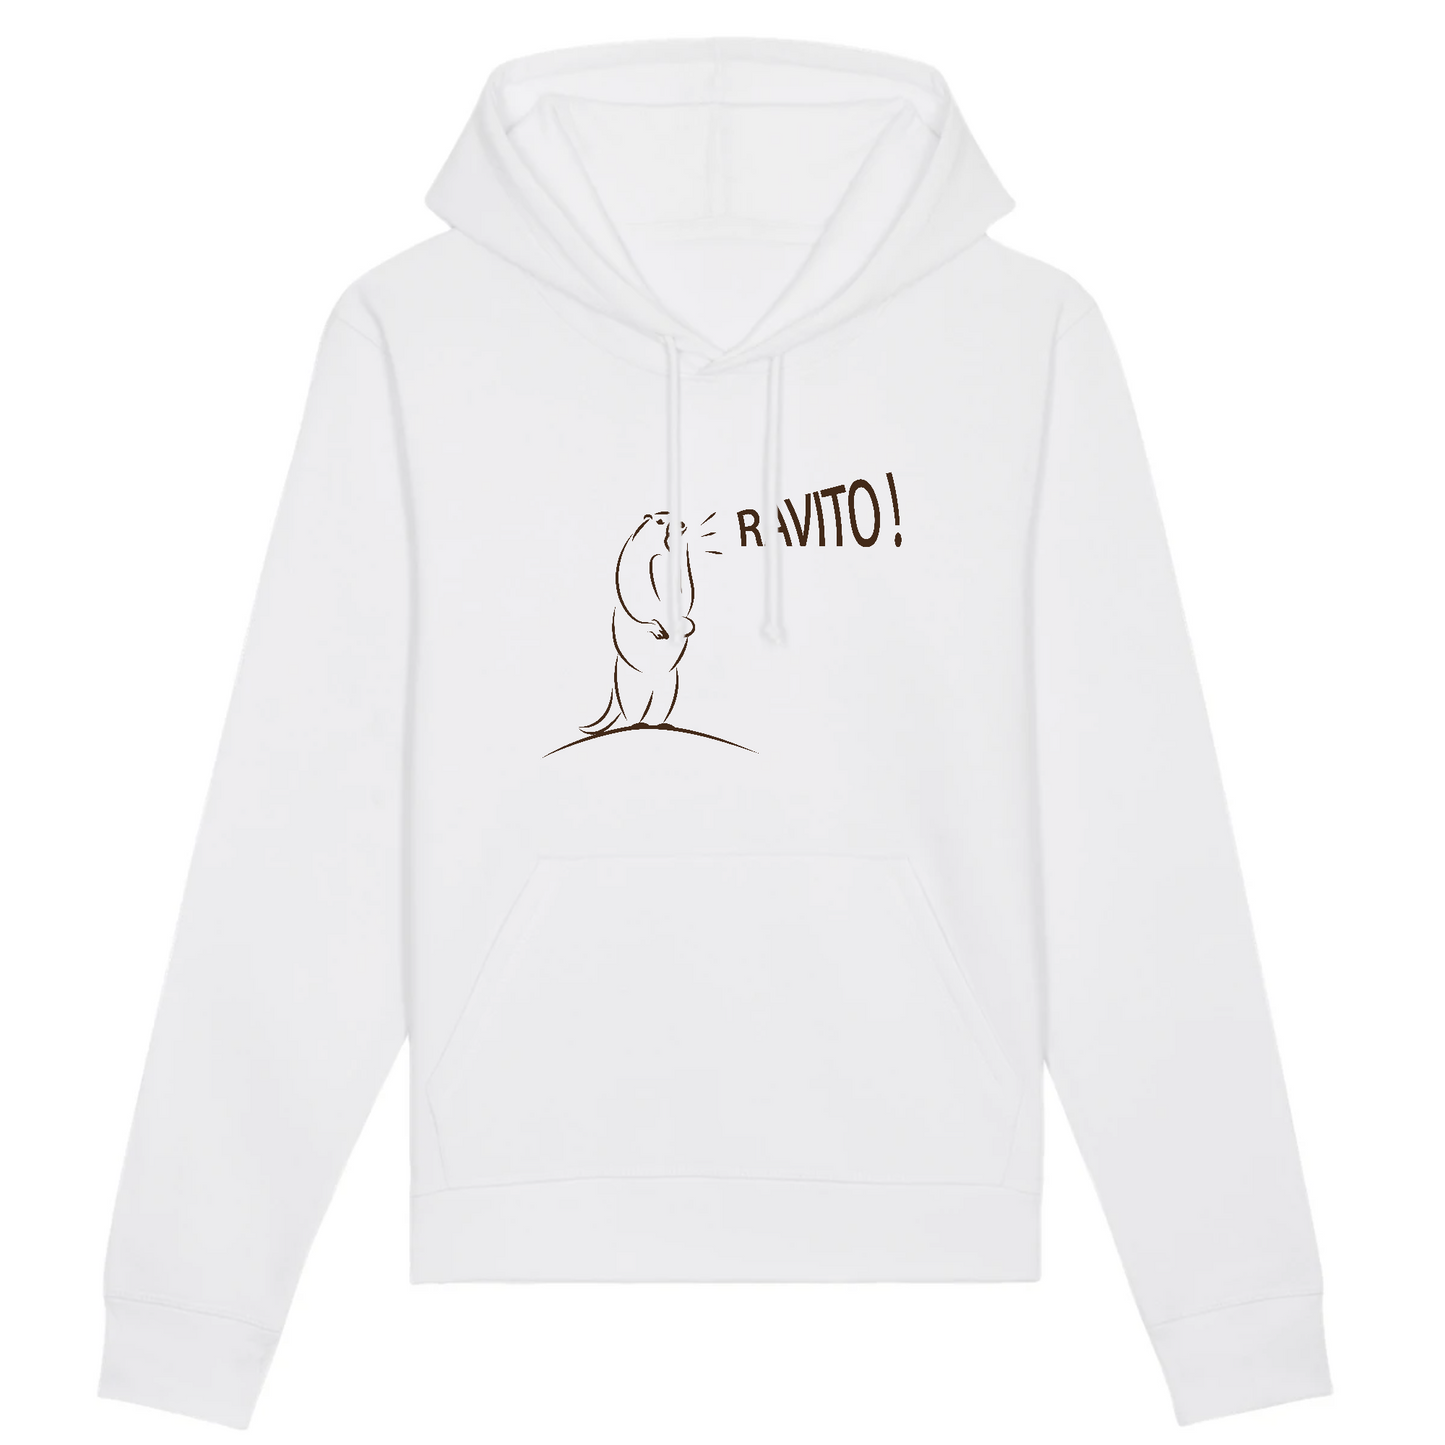 Blanc Design humoristique d'une marmotte criant "Ravito !"